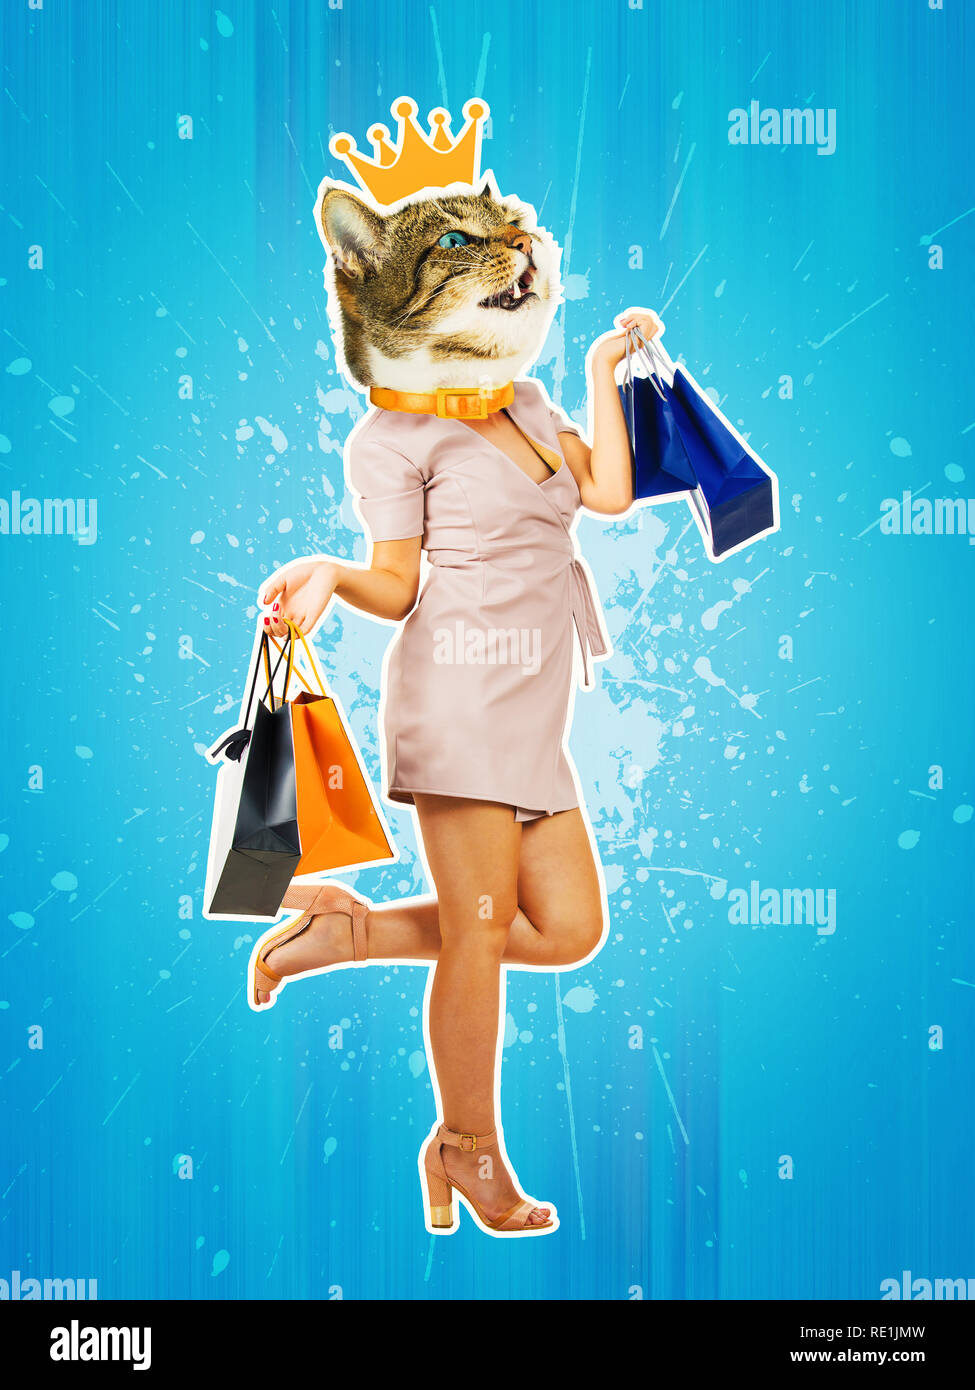 Contemporary art collage portrait heureux chaton headed woman avec couronne d'or, d'une jambe repliée carrying shopping bags. Pop art style moderne zi Banque D'Images